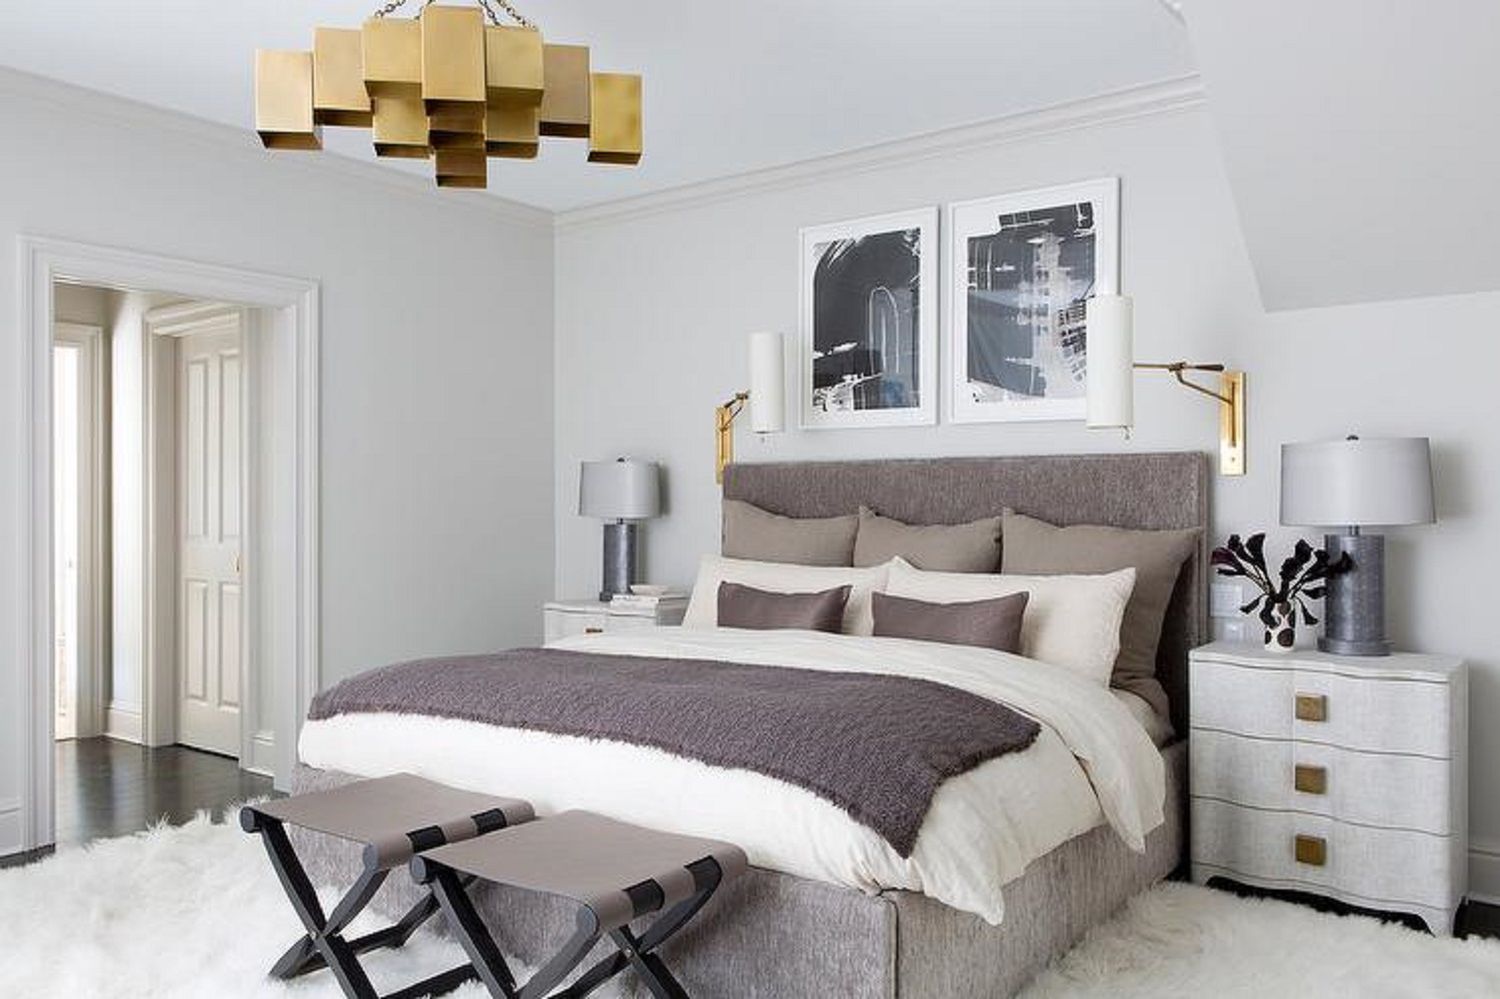 Brass chandelier in bedroom